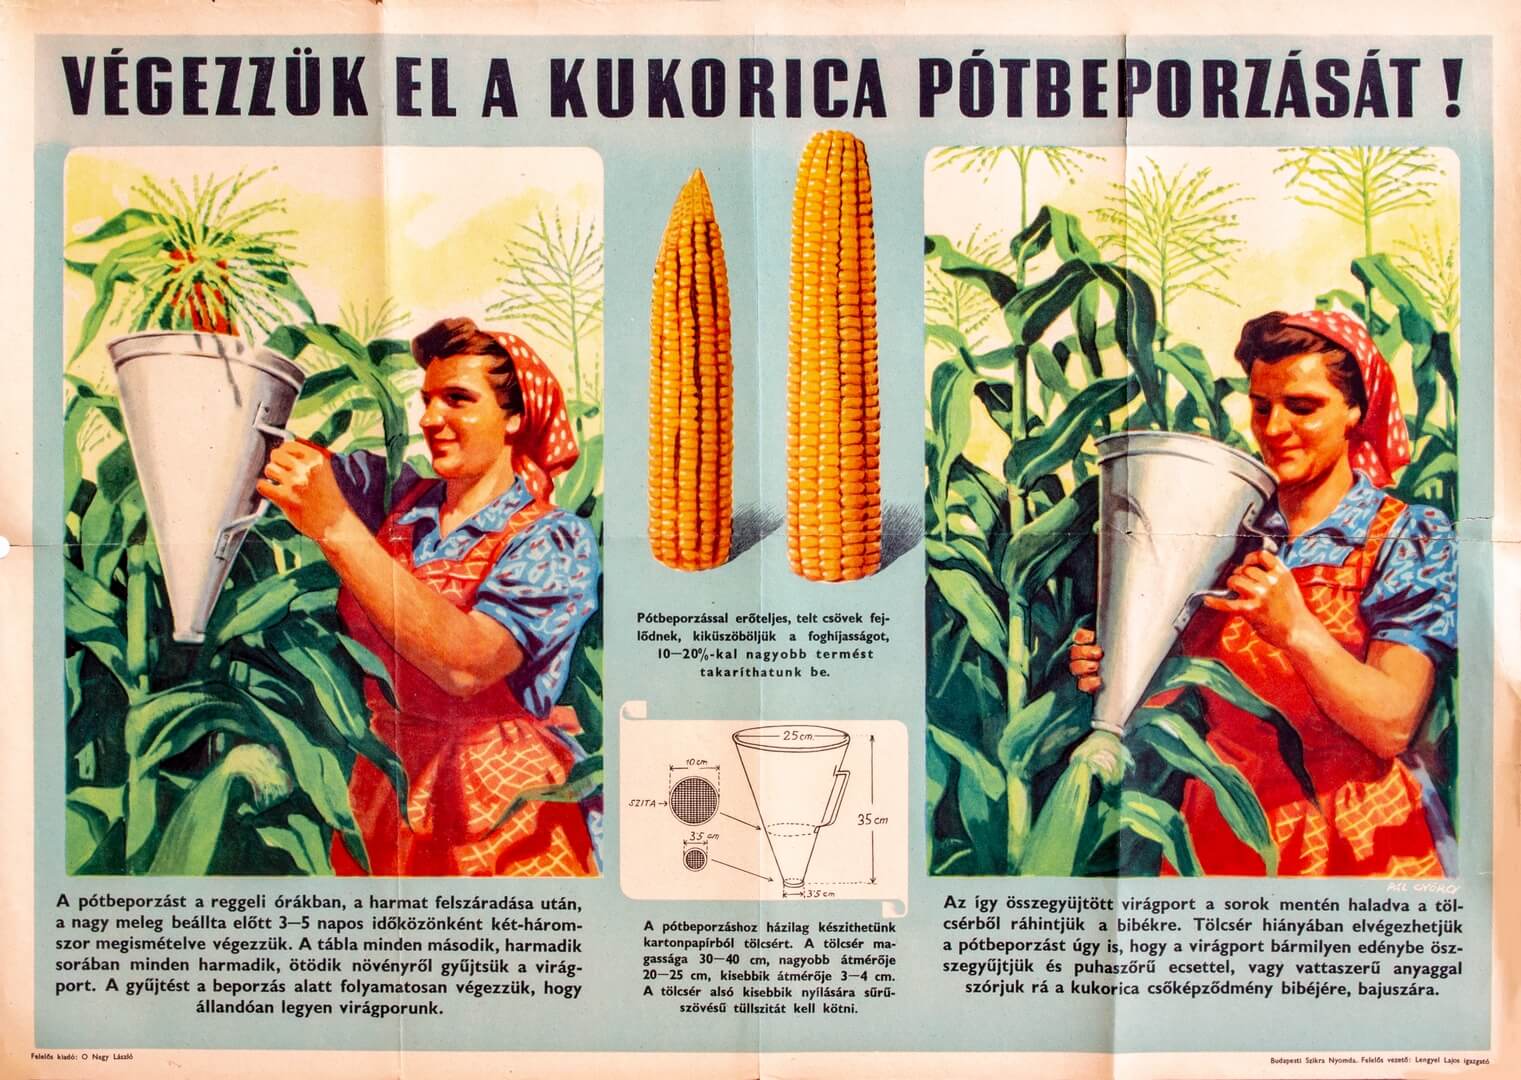 Végezzük el a kukorica pótbeporzását plakát